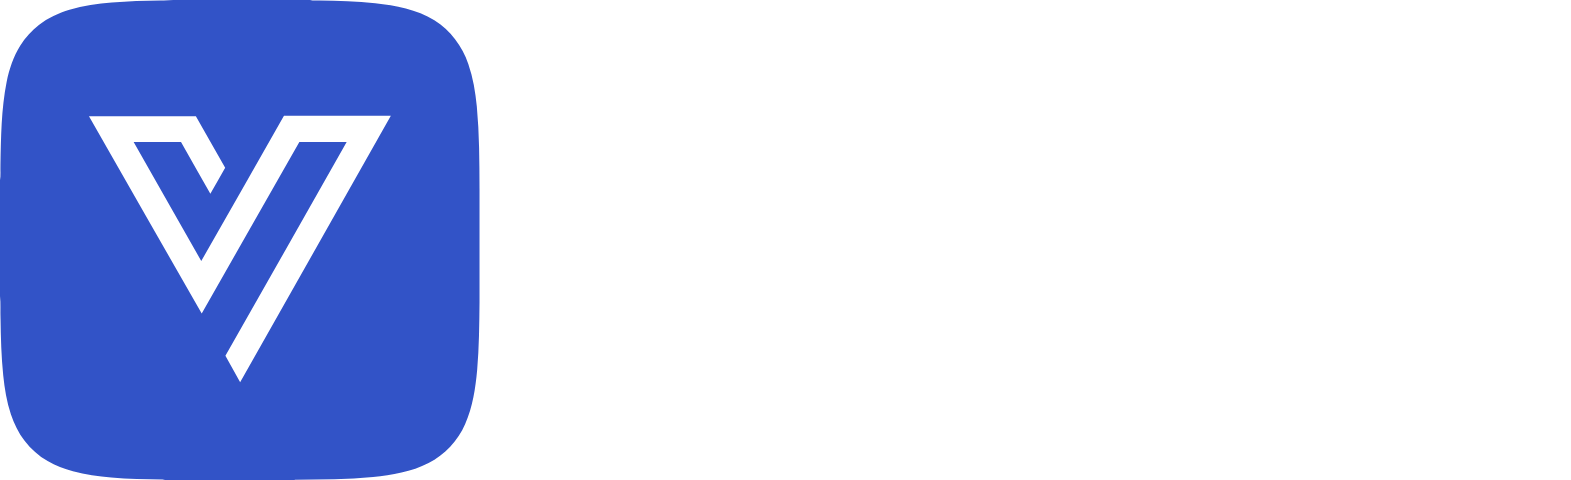 Vislink Technologies
 logo large for dark backgrounds (transparent PNG)